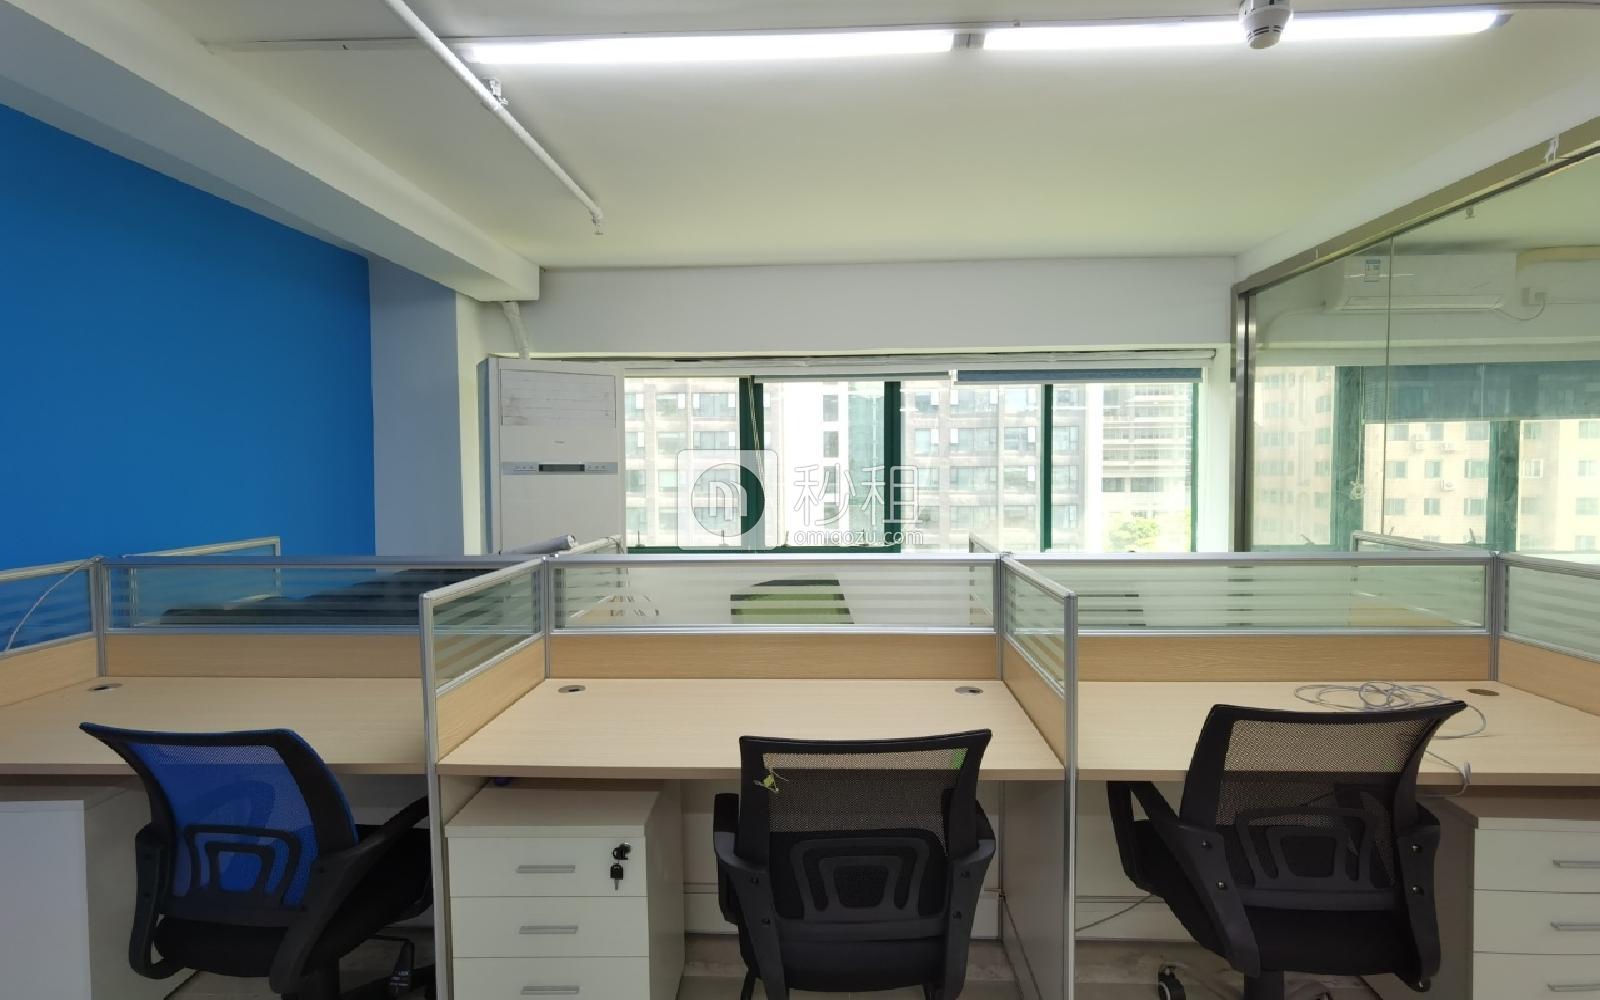 龙泰利科技大厦写字楼出租198平米精装办公室39元/m².月